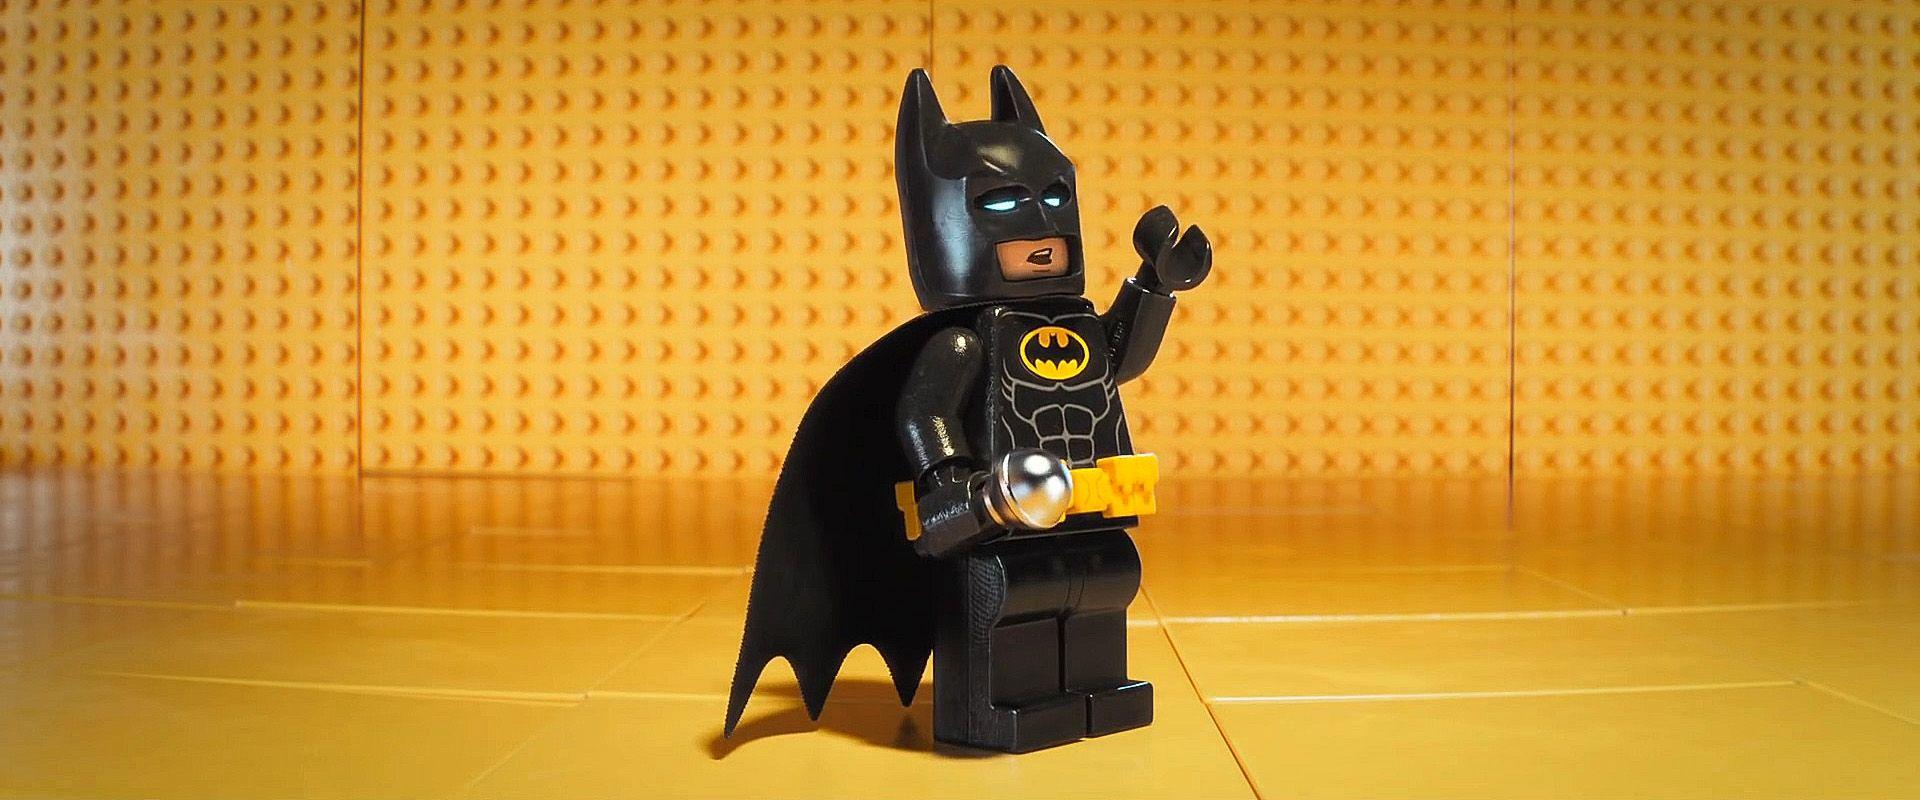 Lego Batman Wallpaper 4k